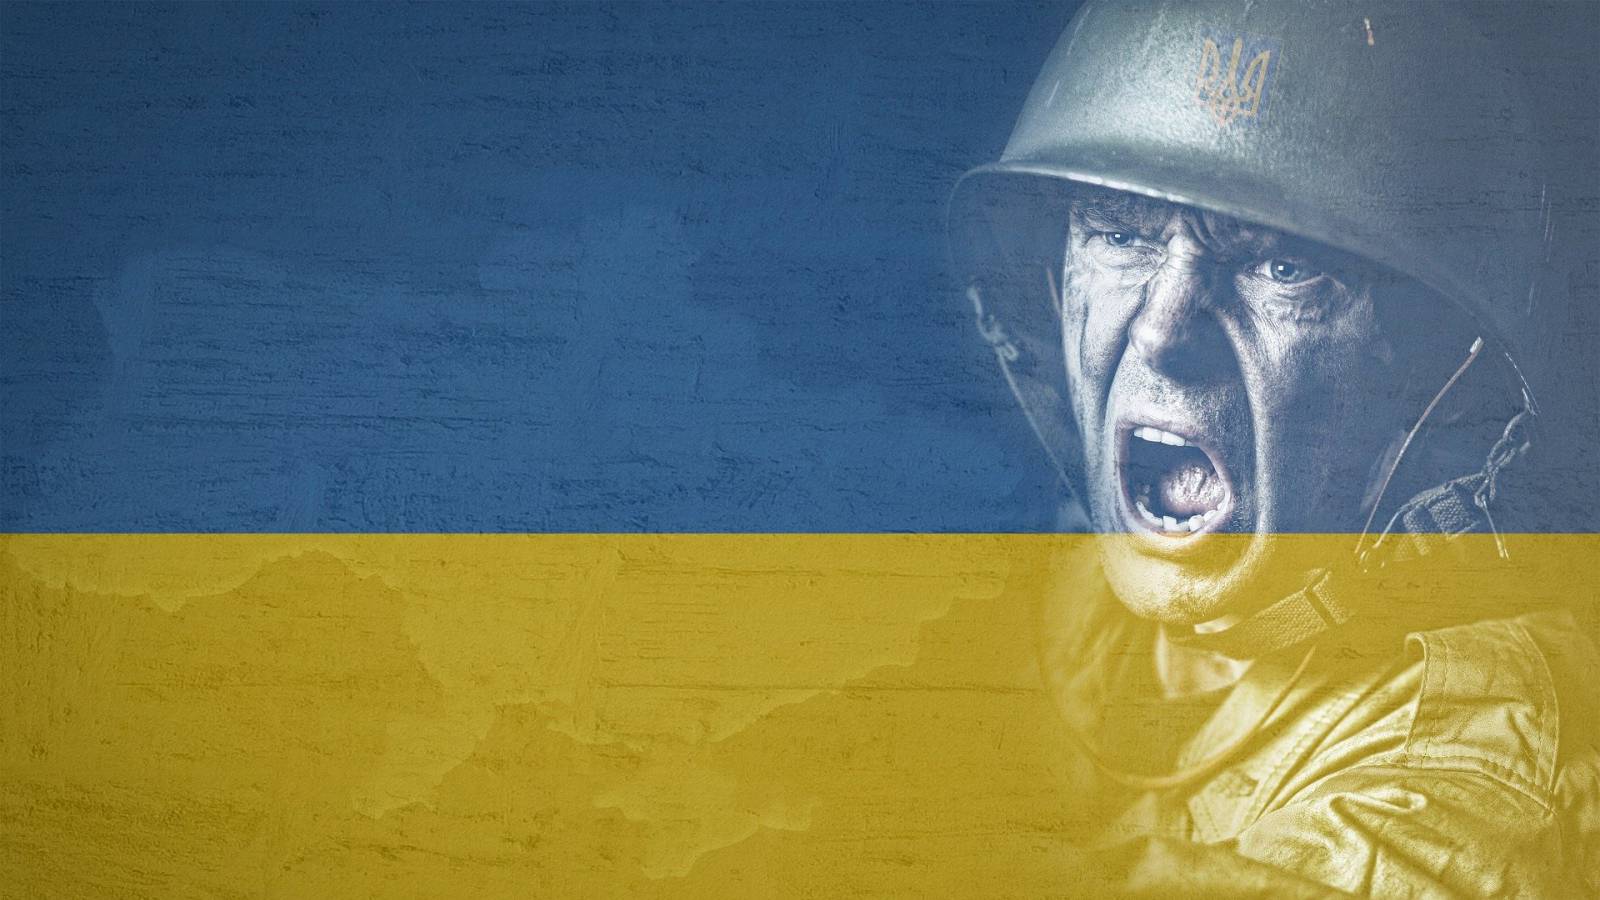 Oekraïne De NAVO heeft nog steeds geen overeenstemming bereikt over veiligheidsgaranties na de oorlog